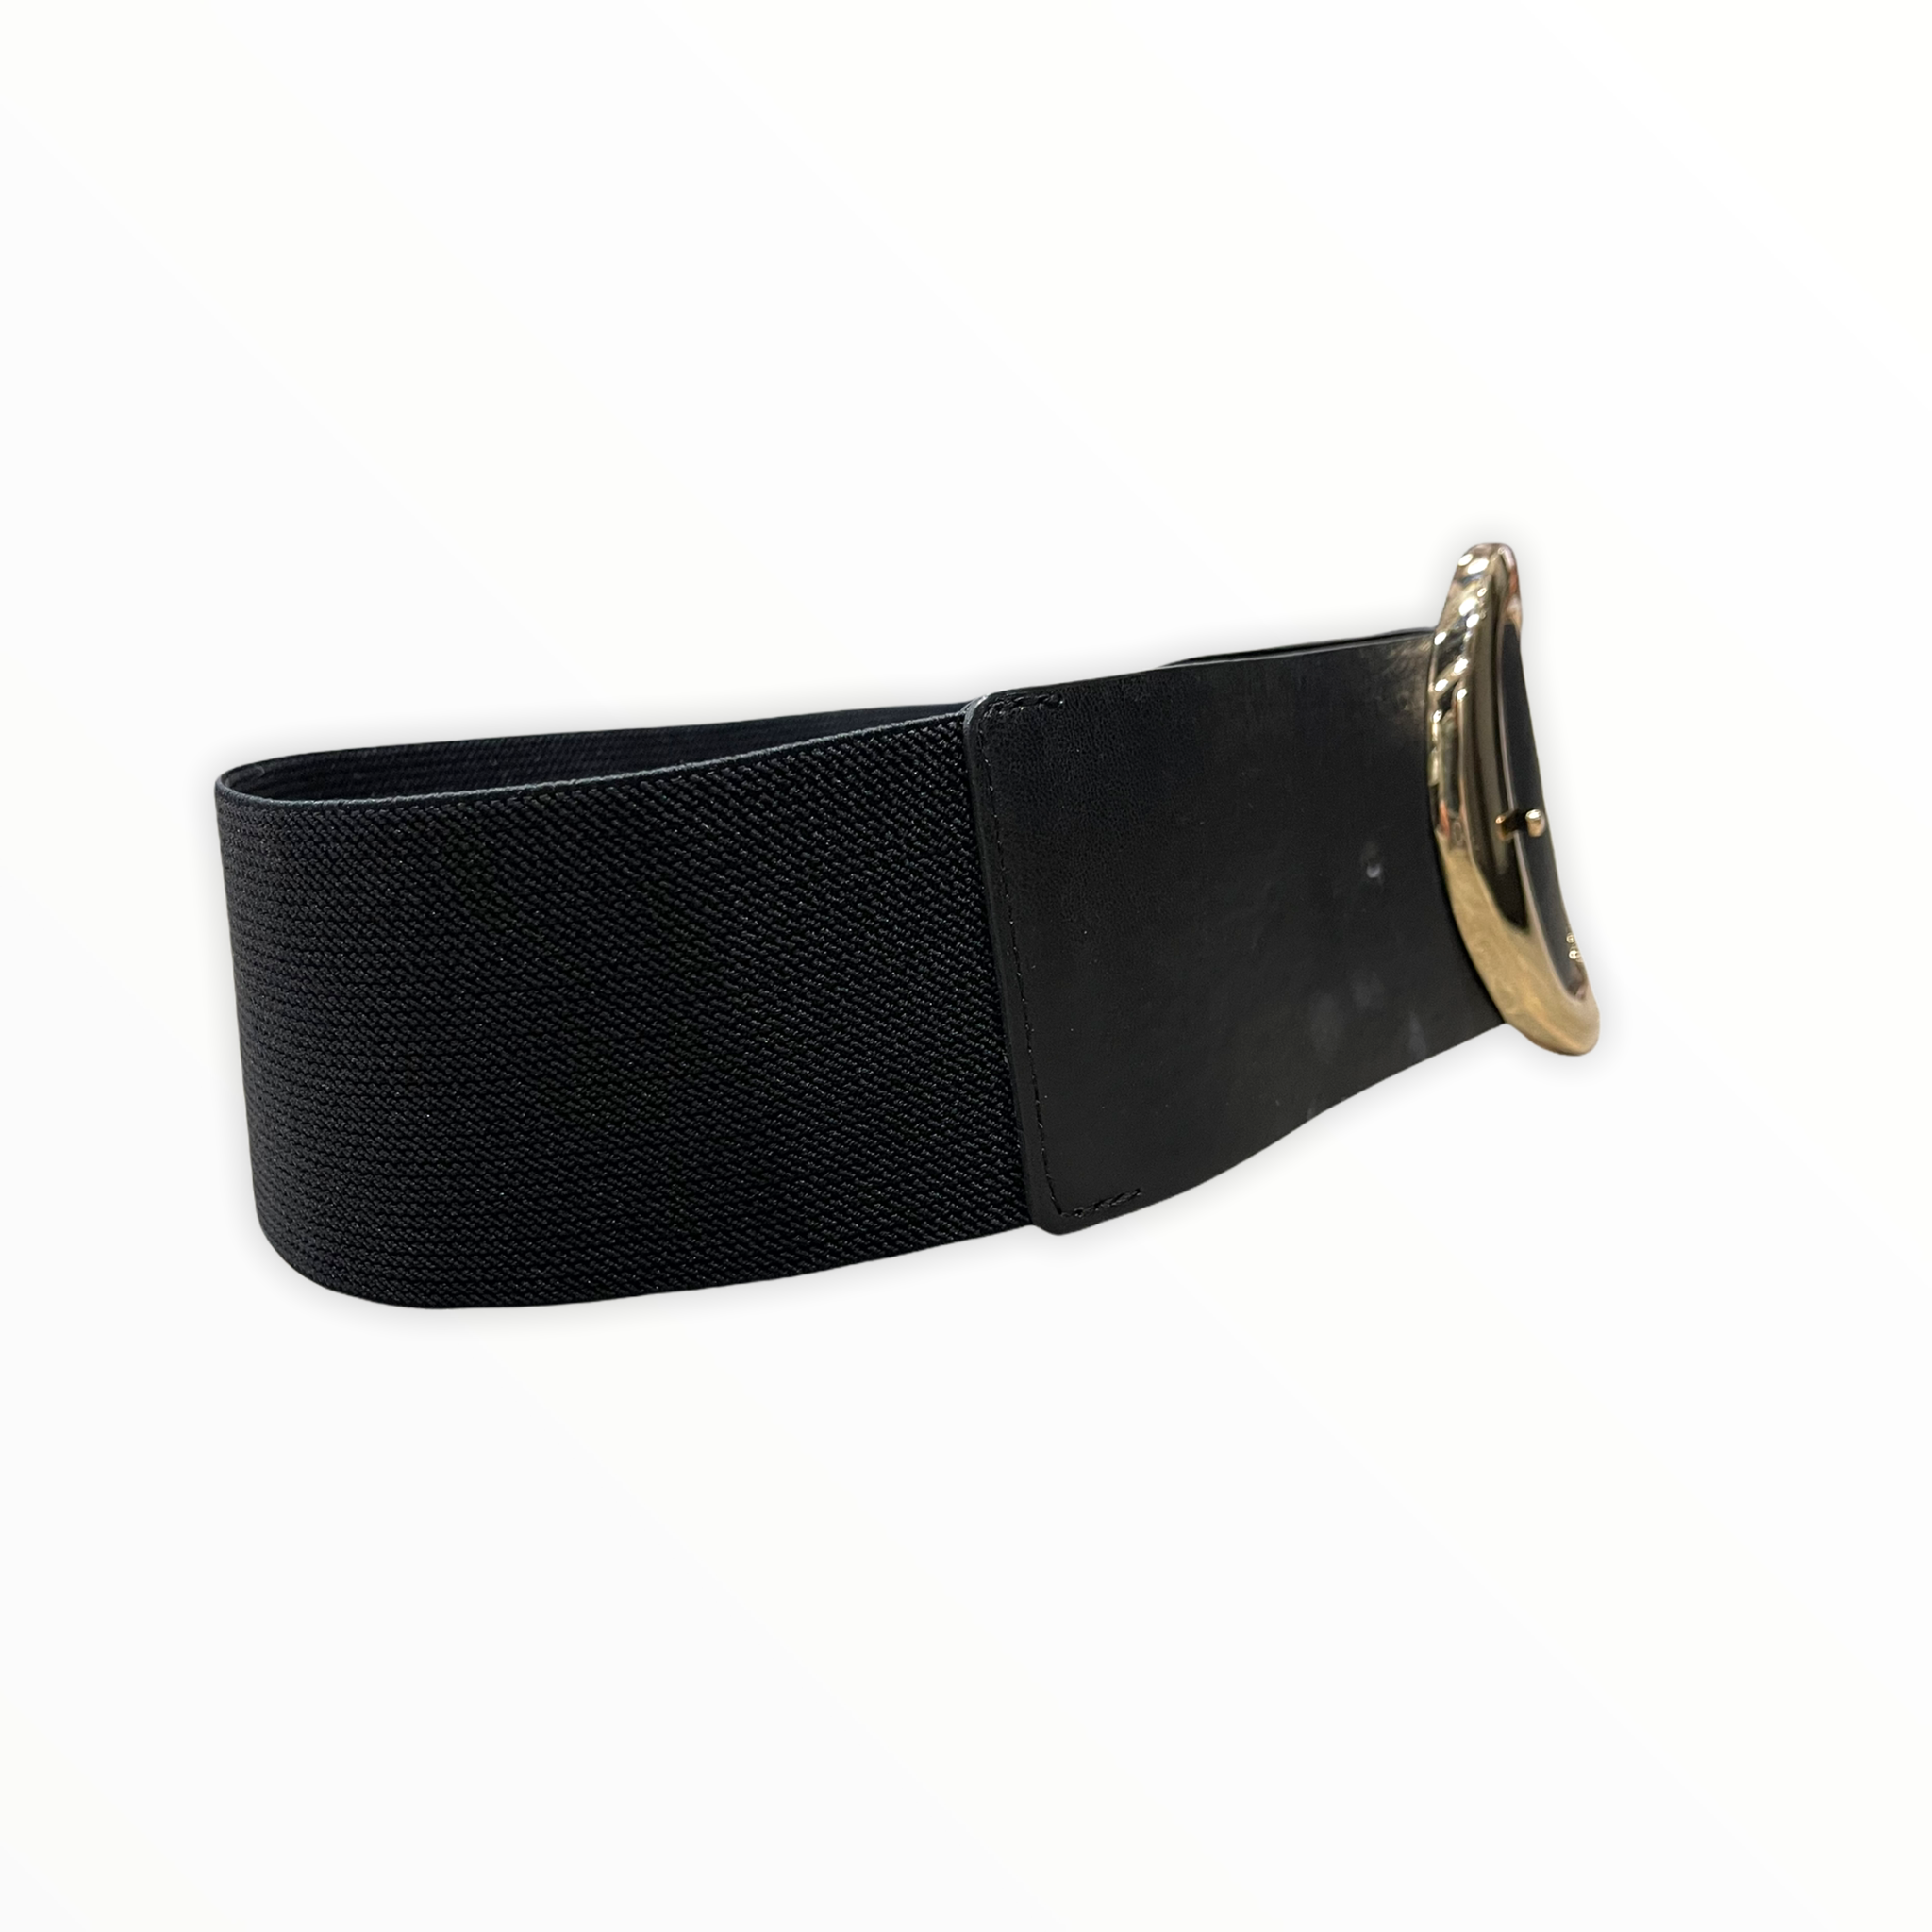 Cintura 080mm con elastistico e fibbia oro chiaro